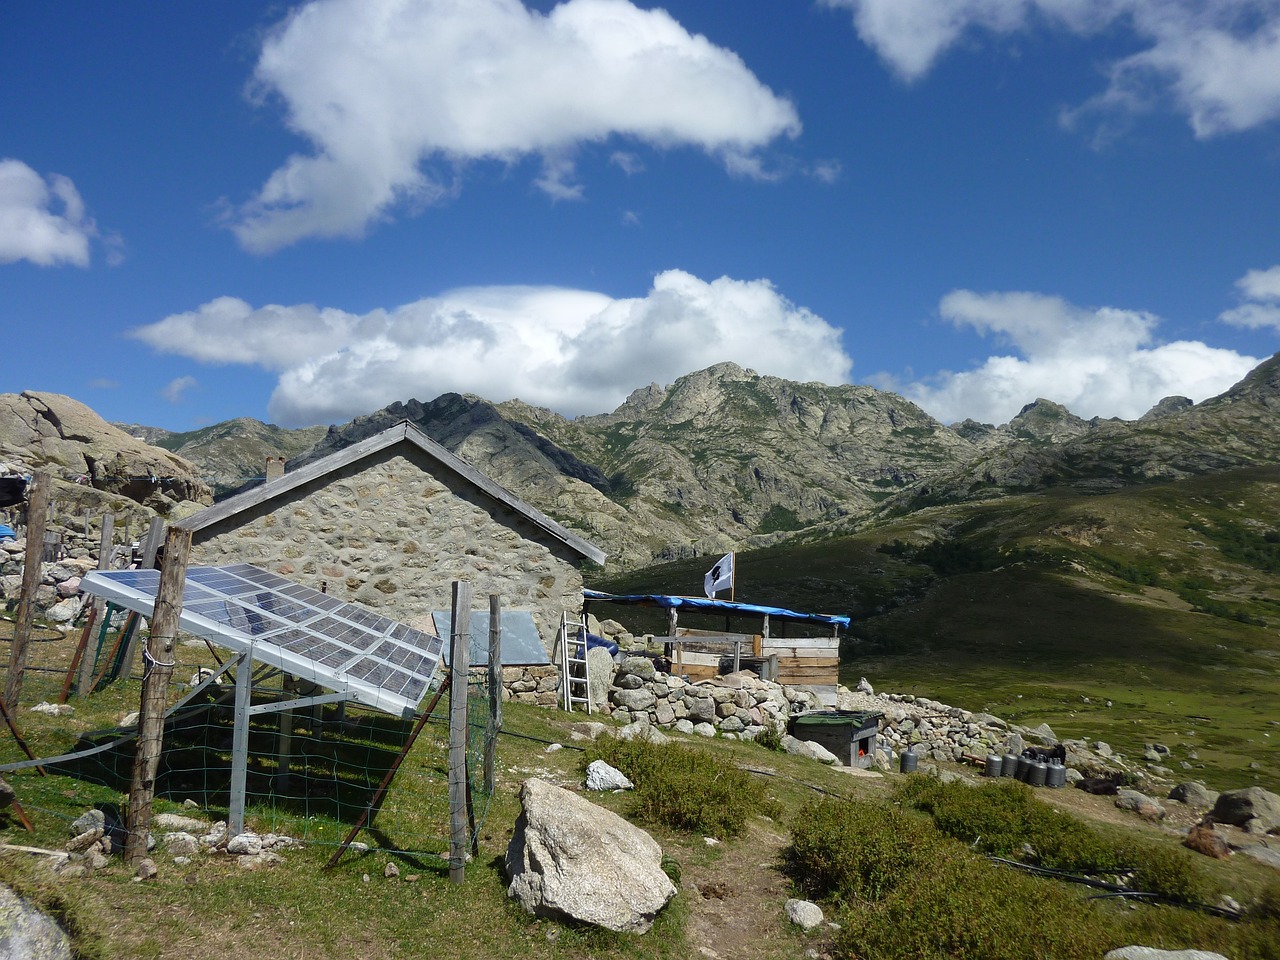 Blick auf die PV-Anlage einer Hütte in den Bergen